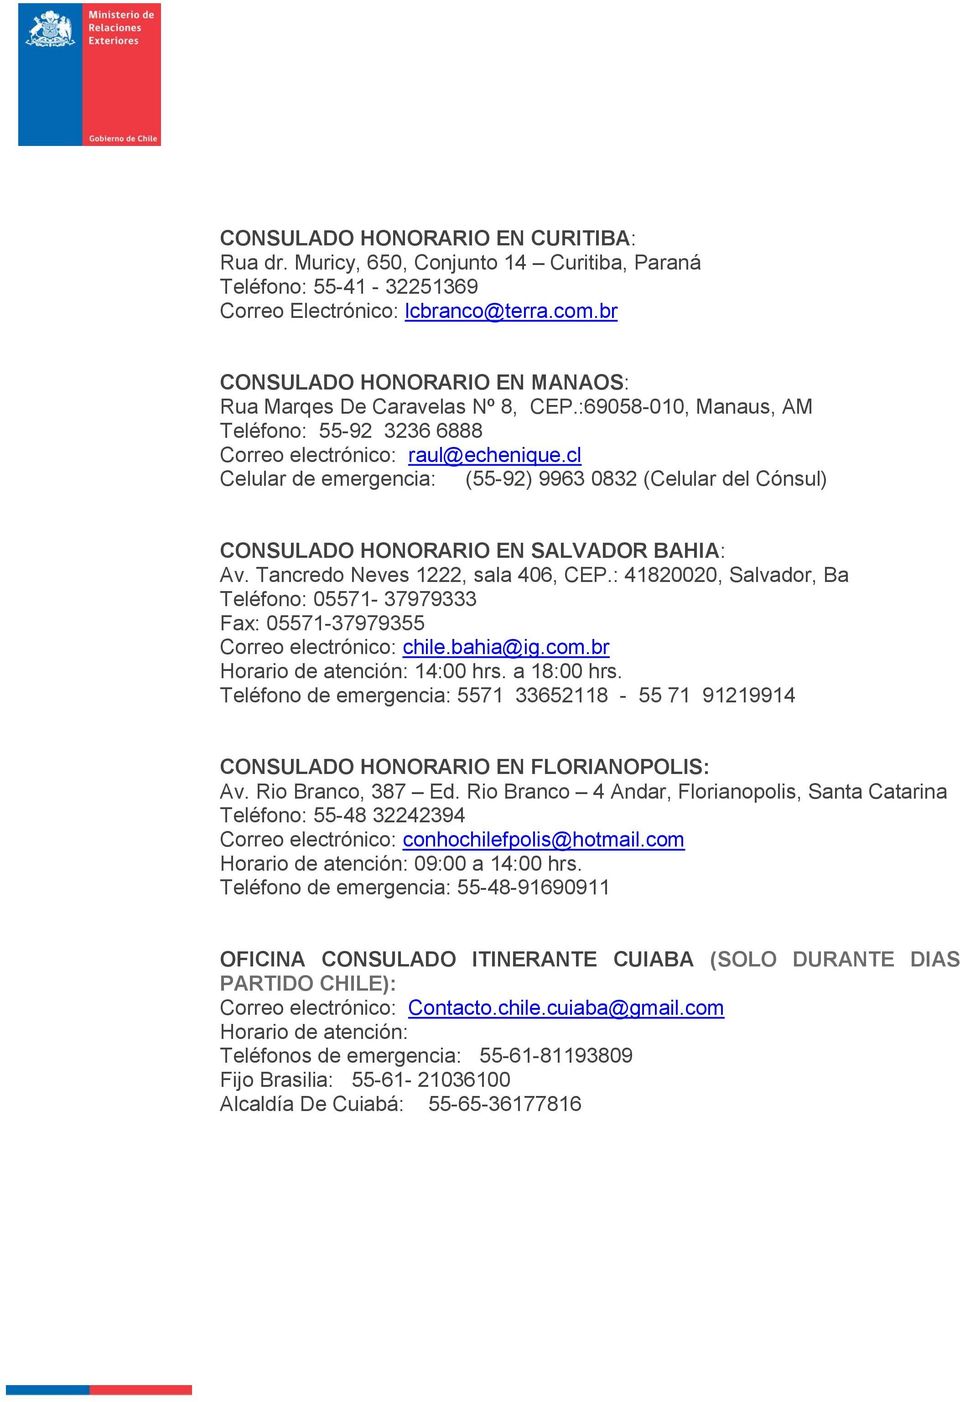 cl Celular de emergencia: (55-92) 9963 0832 (Celular del Cónsul) CONSULADO HONORARIO EN SALVADOR BAHIA: Av. Tancredo Neves 1222, sala 406, CEP.